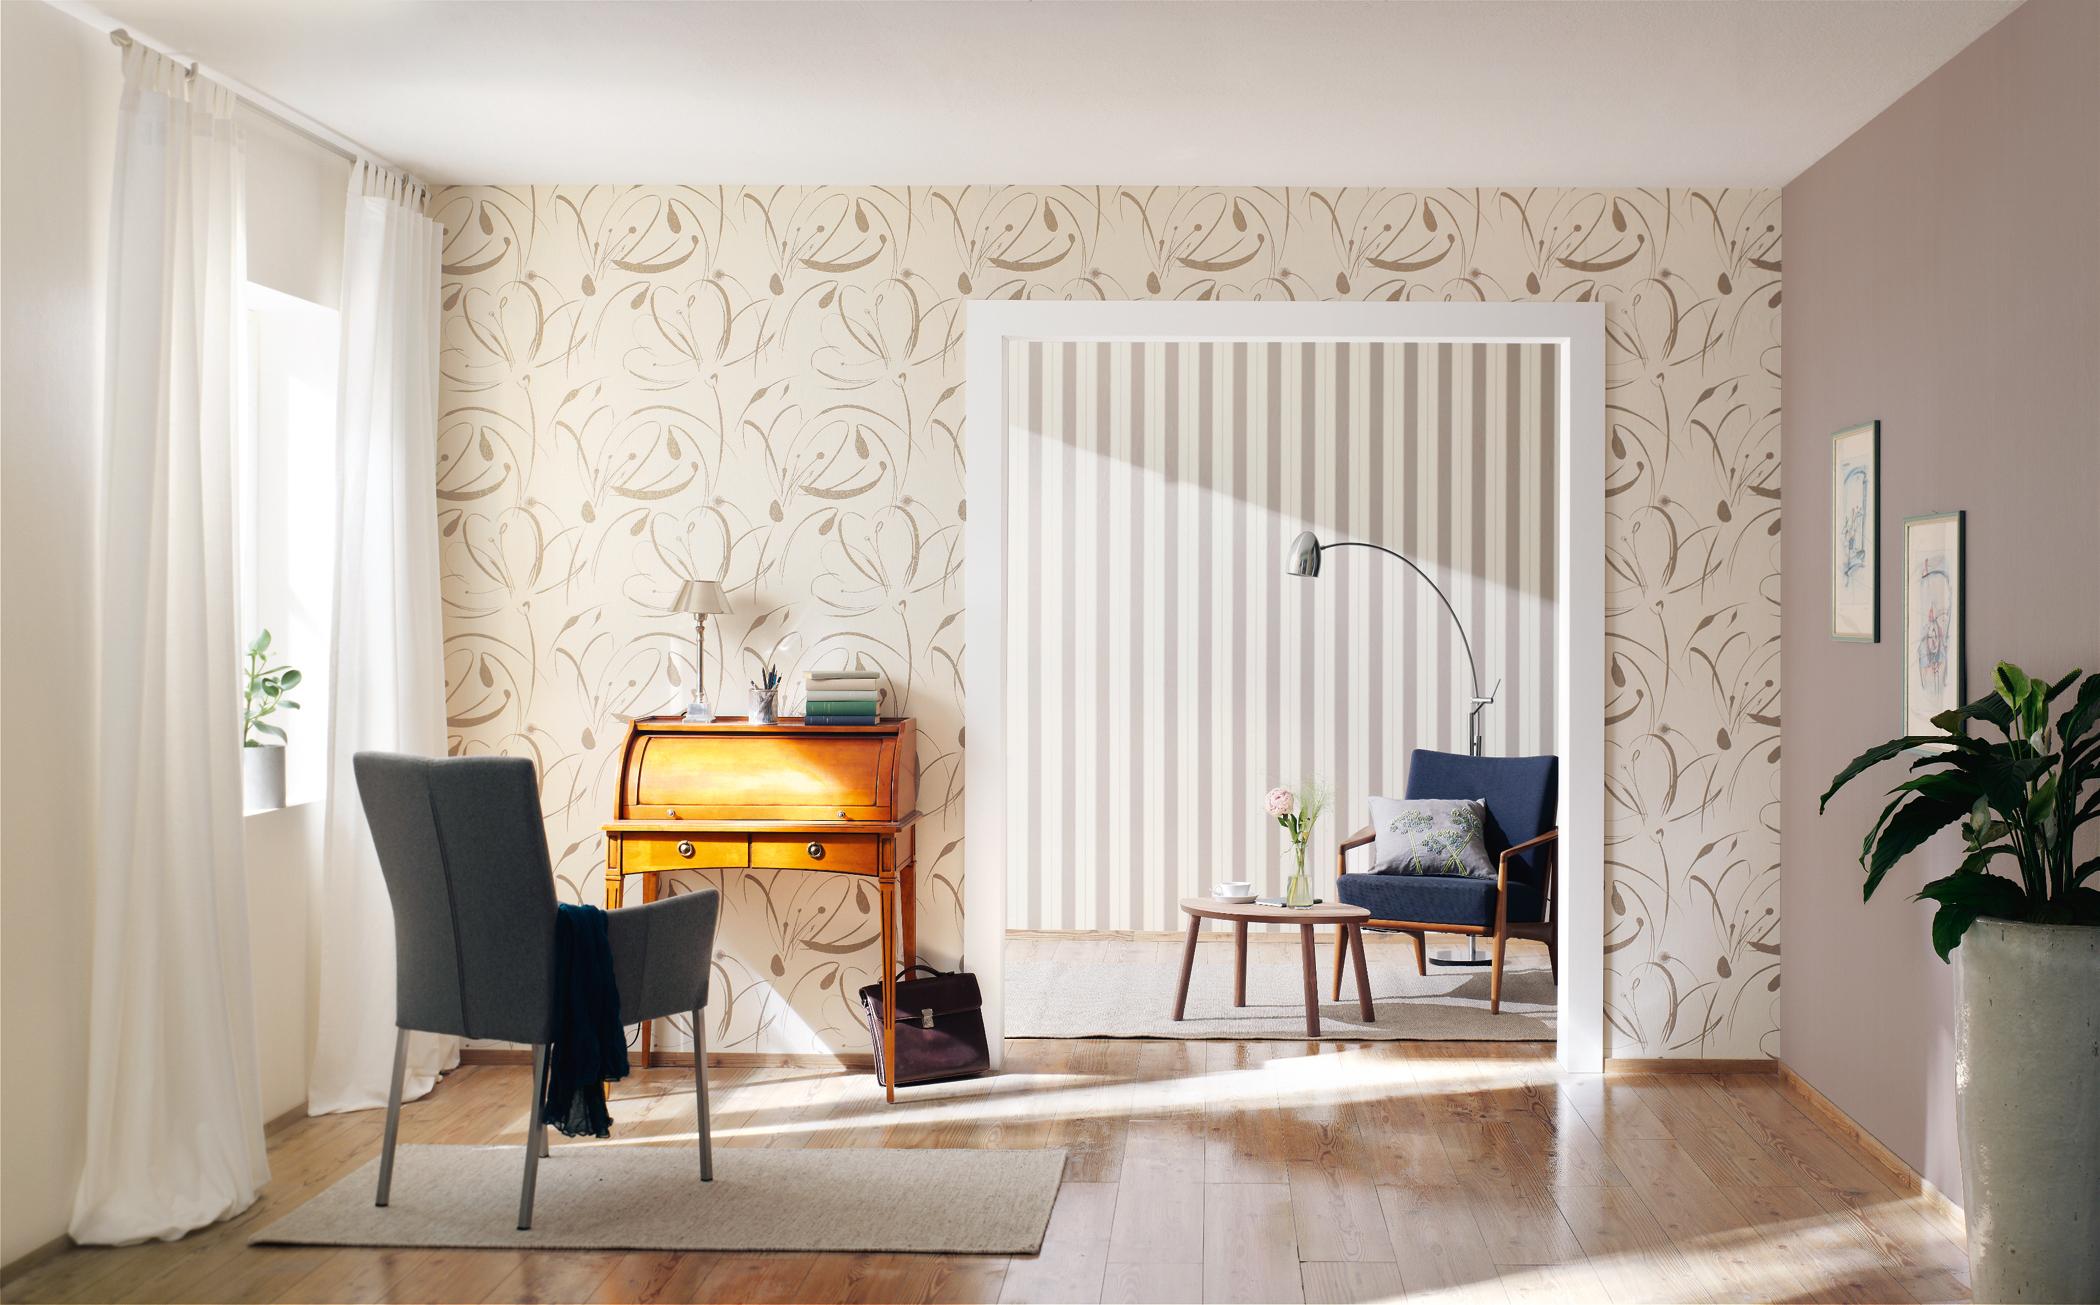 Minimalistisch eingerichtetes Doppel-Wohnzimmer #stuhl #beistelltisch #bogenlampe #sessel #wandgestaltung #minimalistisch #sekretär #tapete ©Rasch